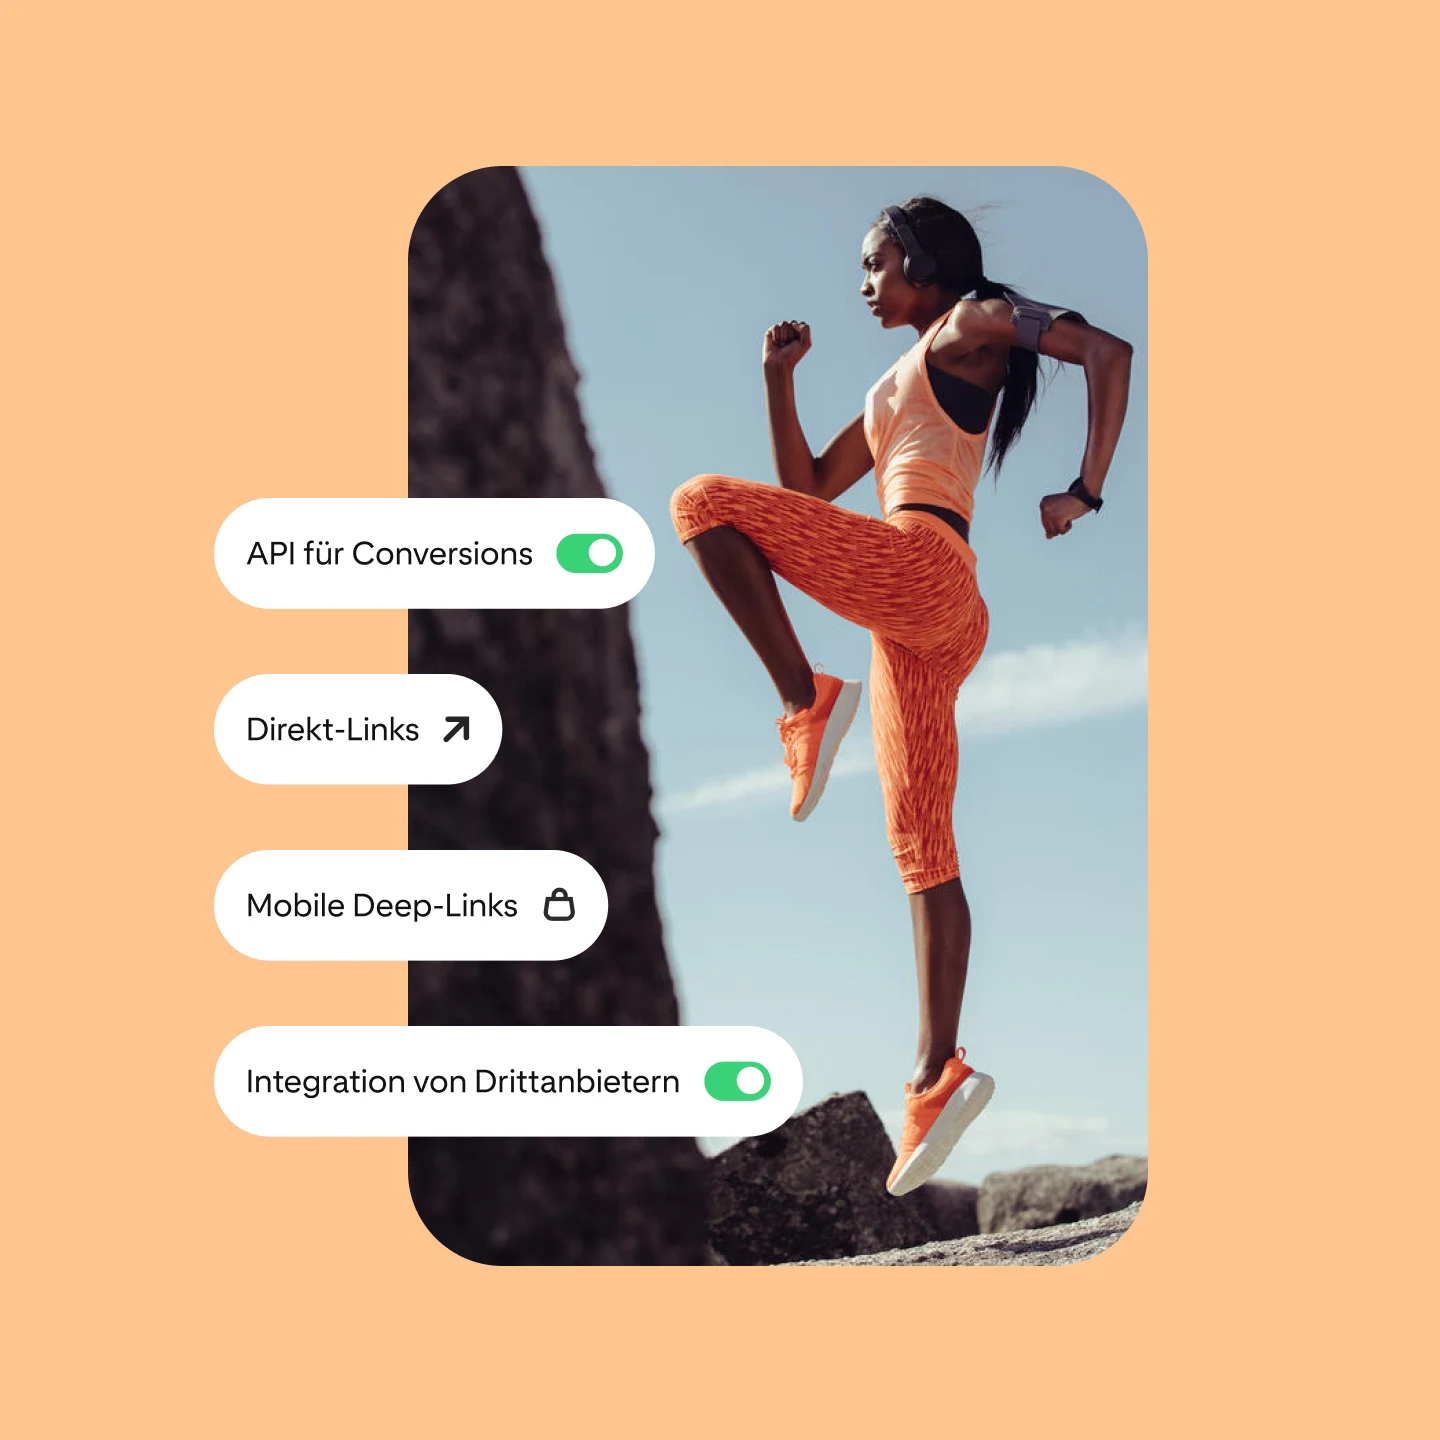 Das Bild zeigt mehrere Pinterest-Performance-Lösungen und eine Frau, die im Freien ein Workout in orangefarbener Trainingskleidung durchführt.